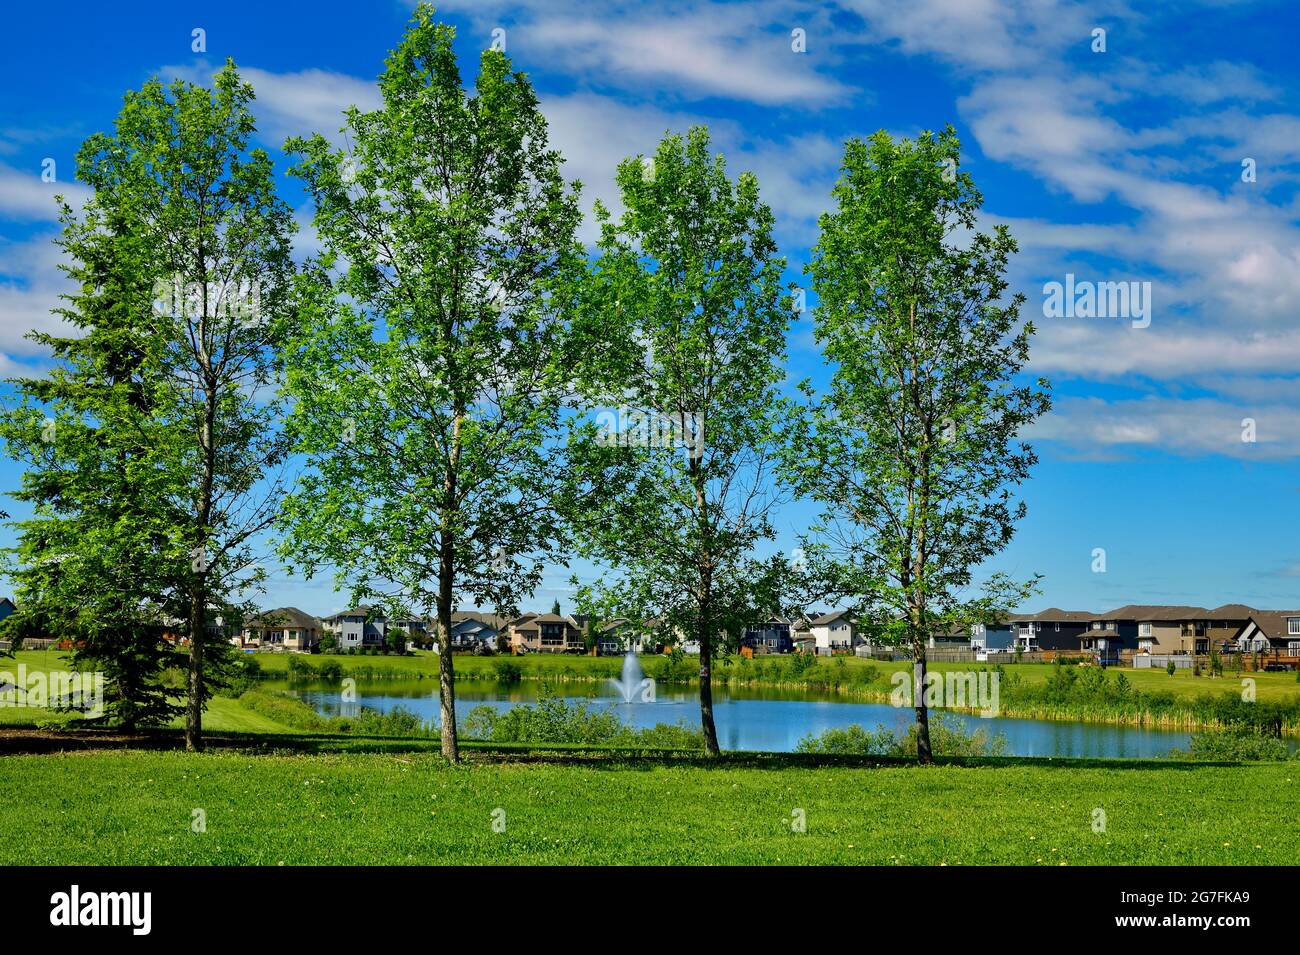 Eine urbane Landschaft mit Grünflächen, Bäumen, einem Teich, Häusern und blauem Himmel in Morinville, Alberta, Kanada. Stockfoto